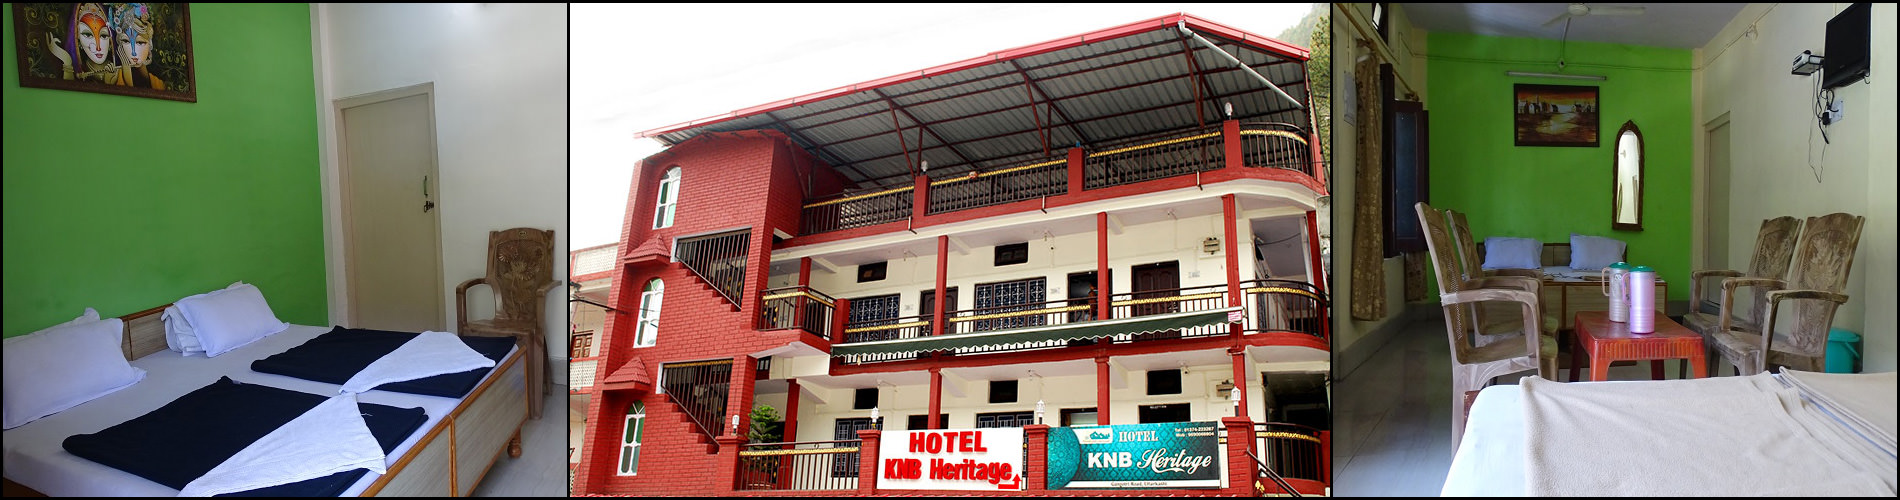 Hotel KNB Heritage